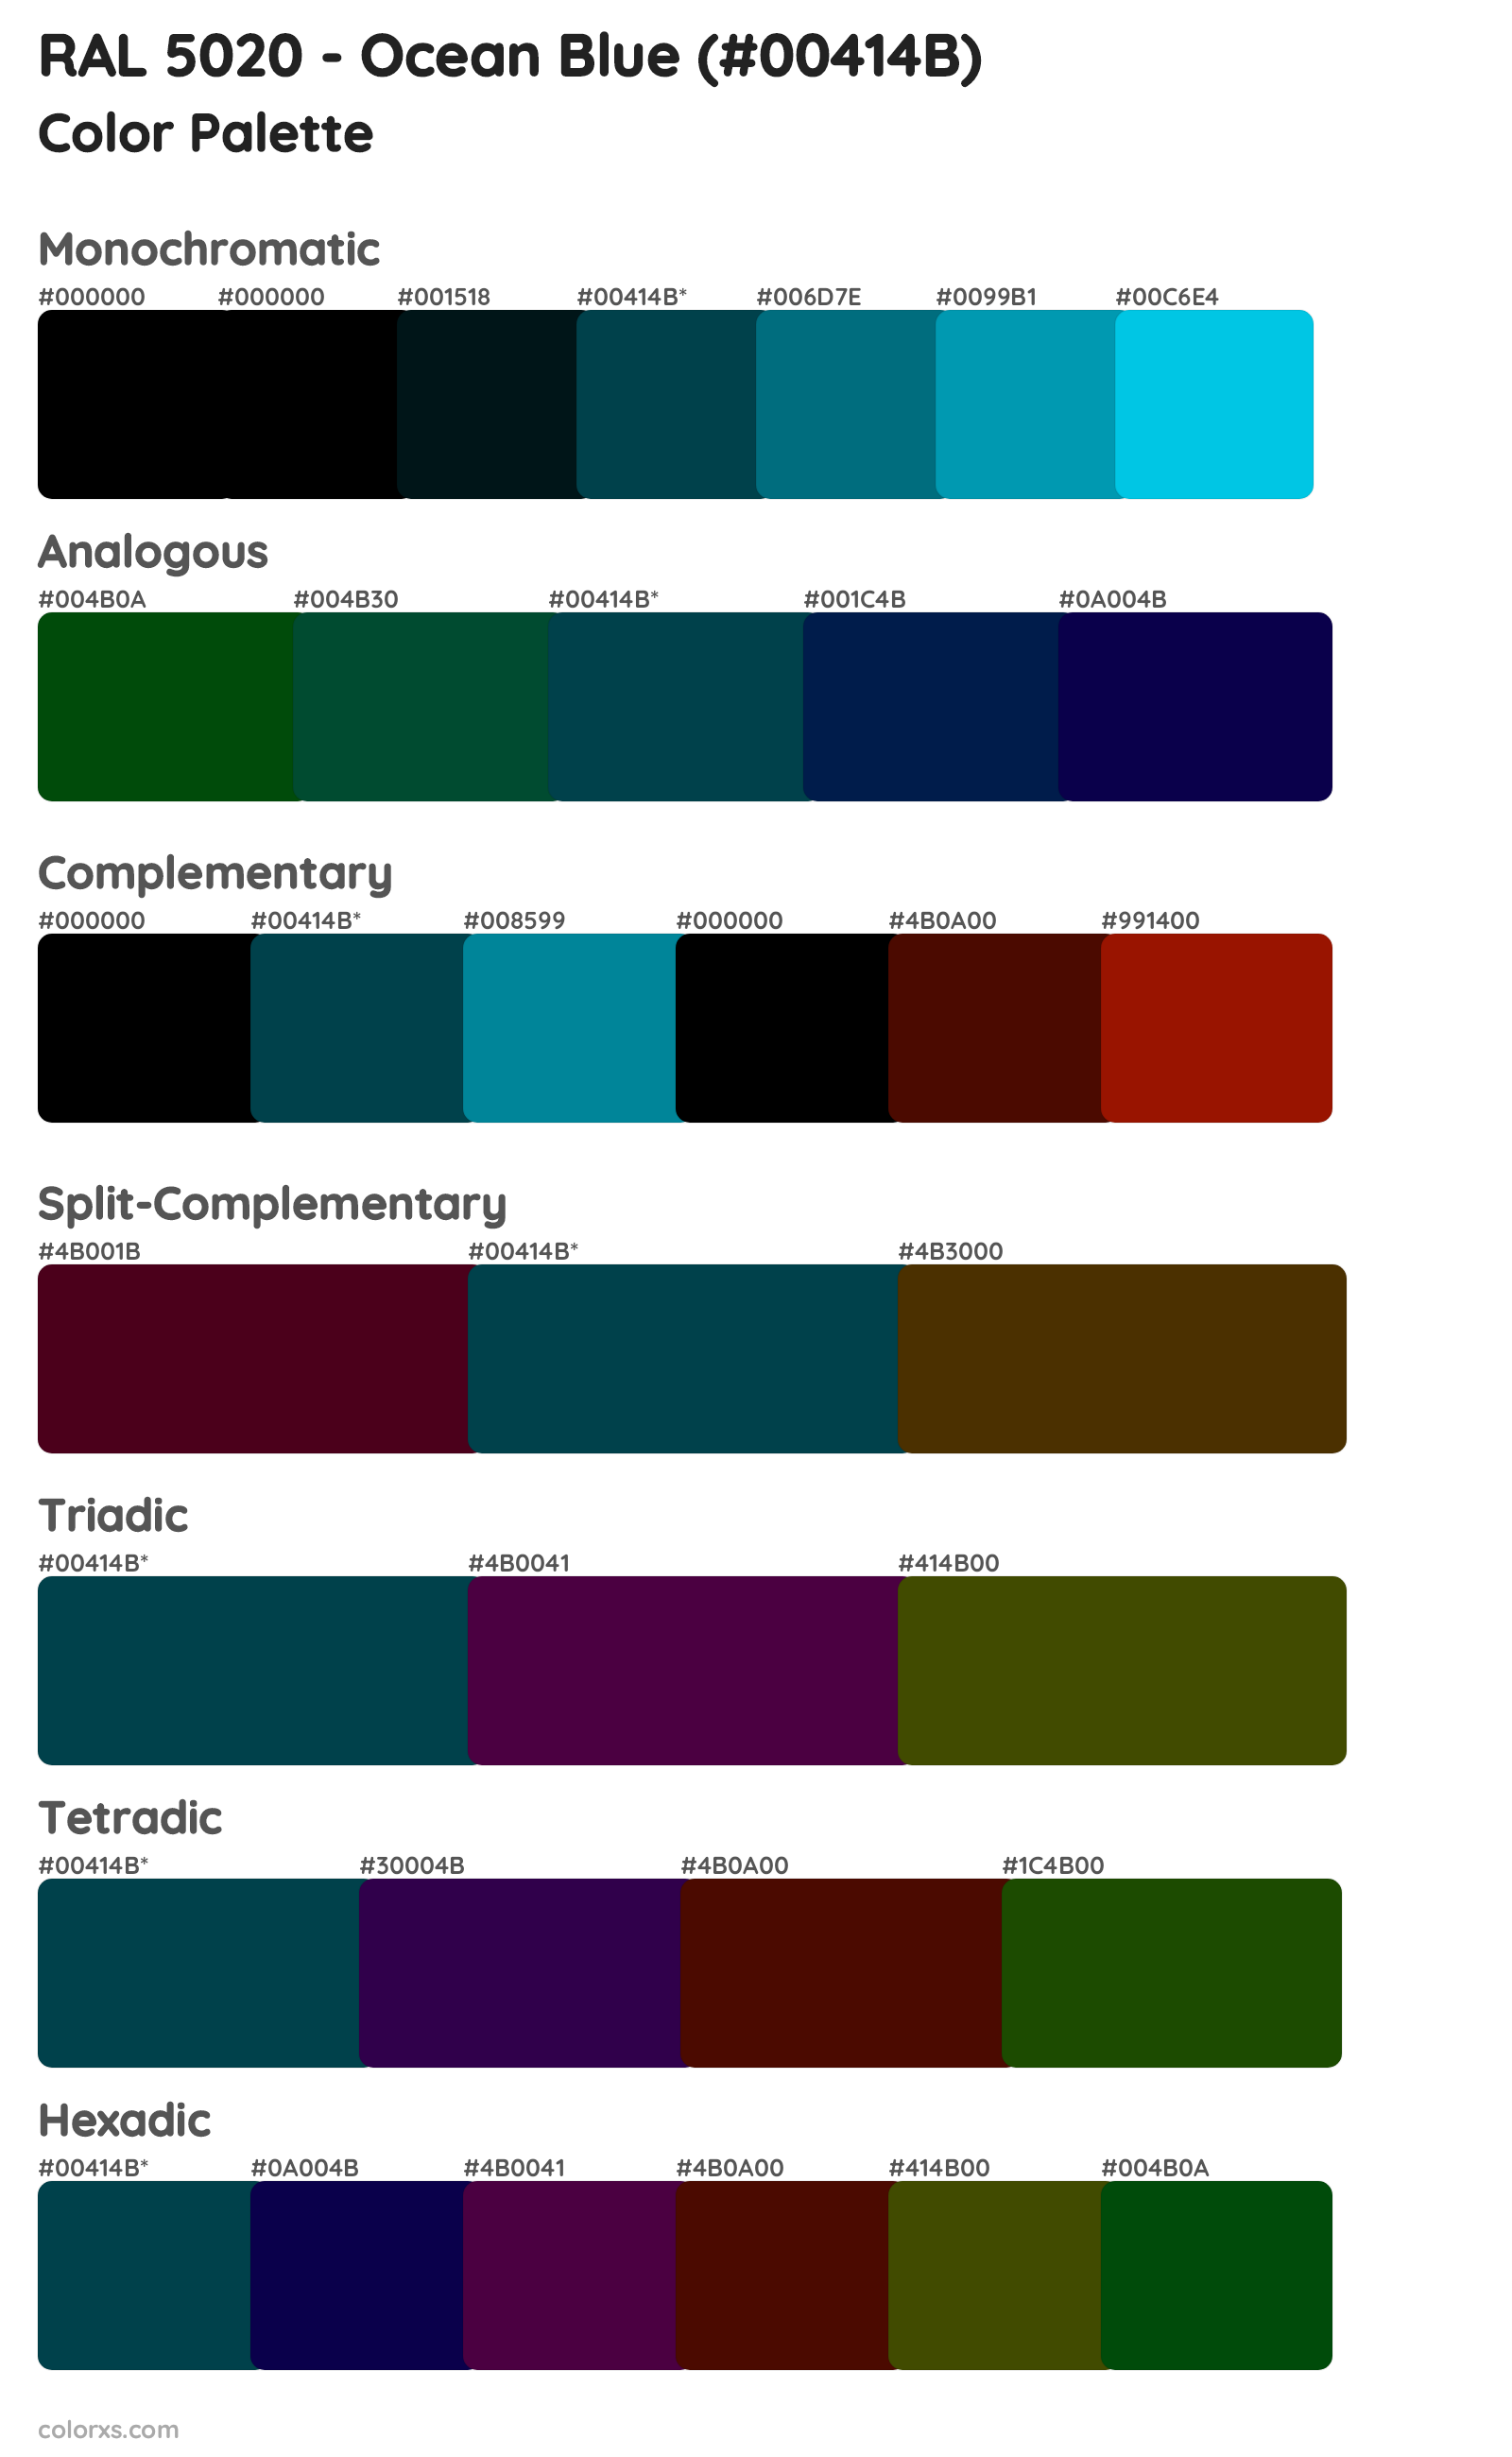 RAL 5020 - Ocean Blue Color Scheme Palettes